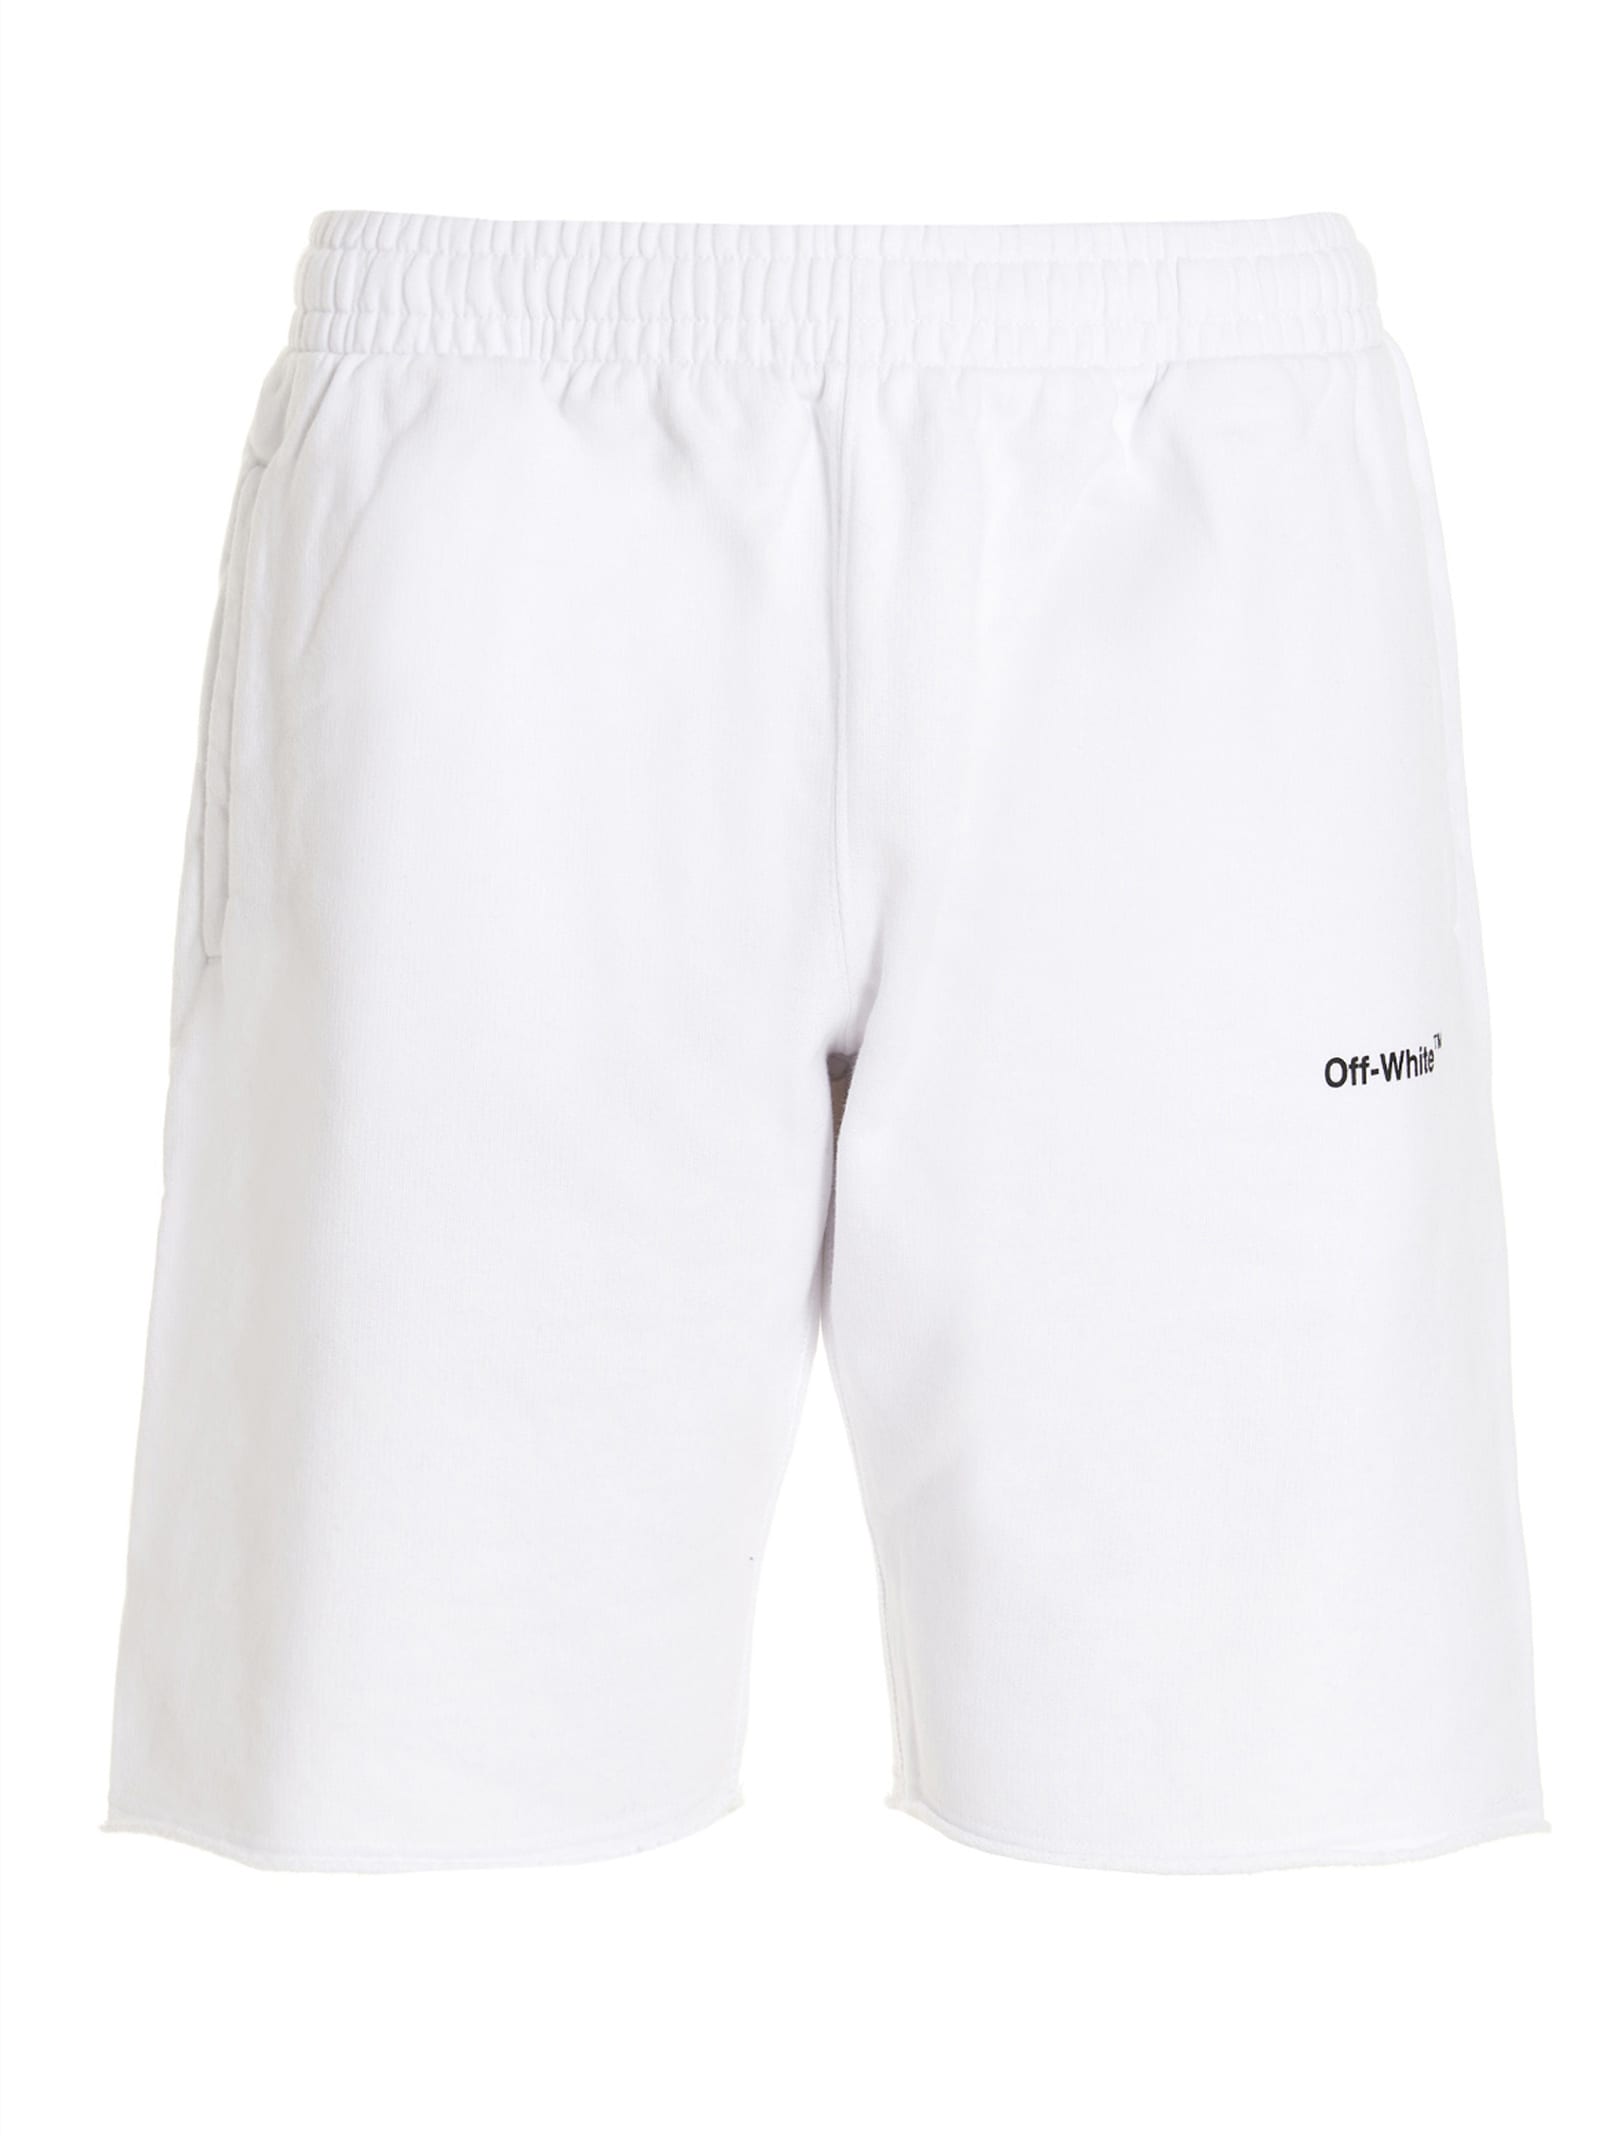 Off-White caravaggio Bermuda Shorts